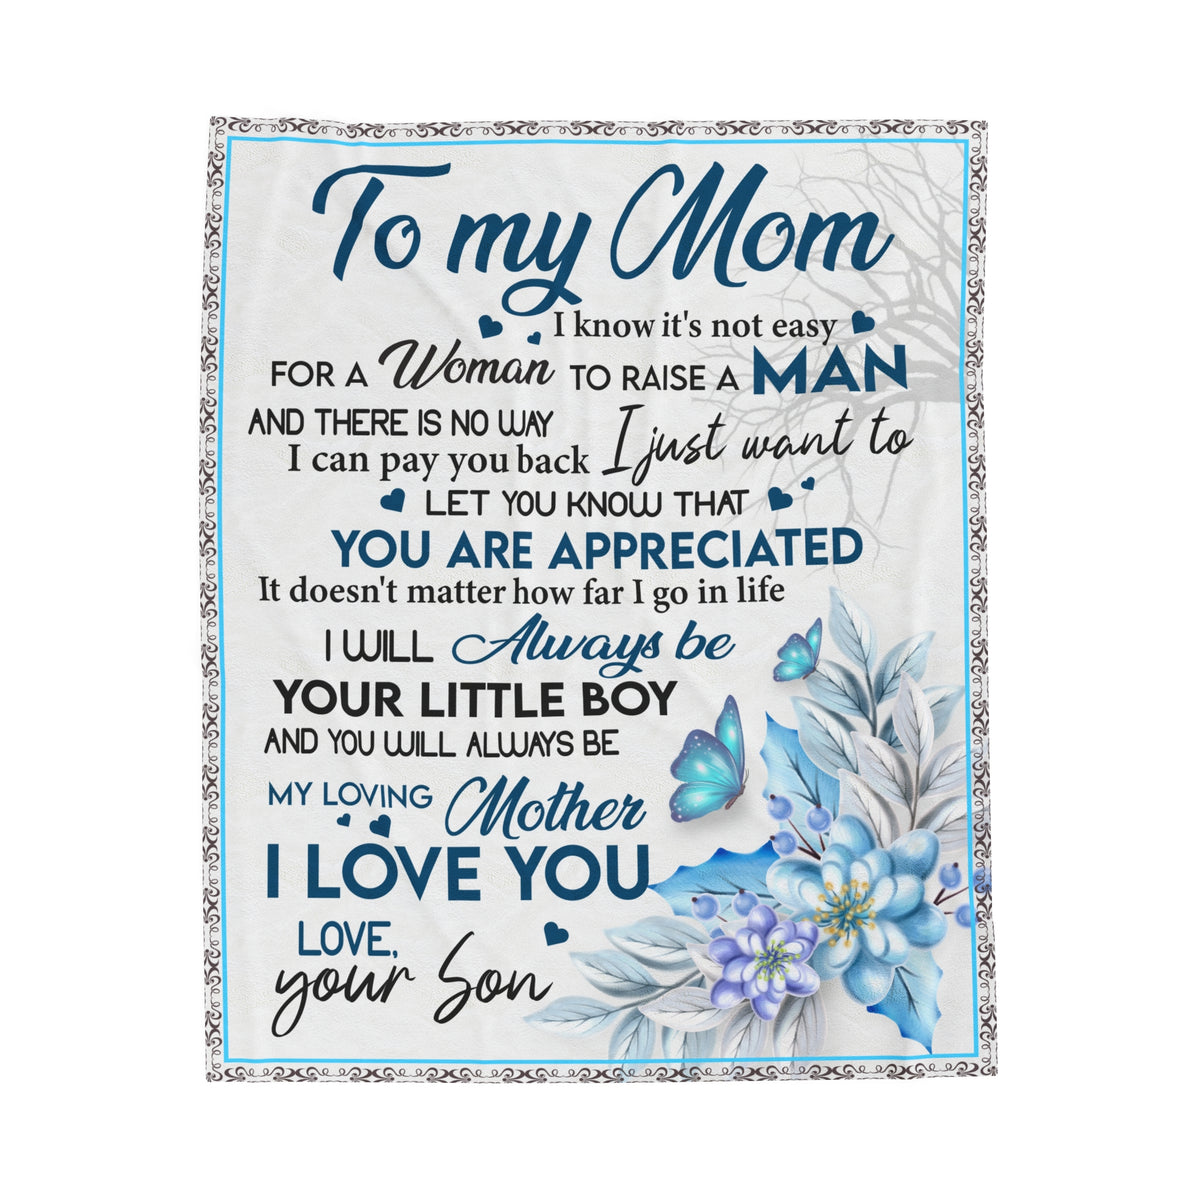 To my Mom - not easy to raise a man - Velveteen Plush Blanket